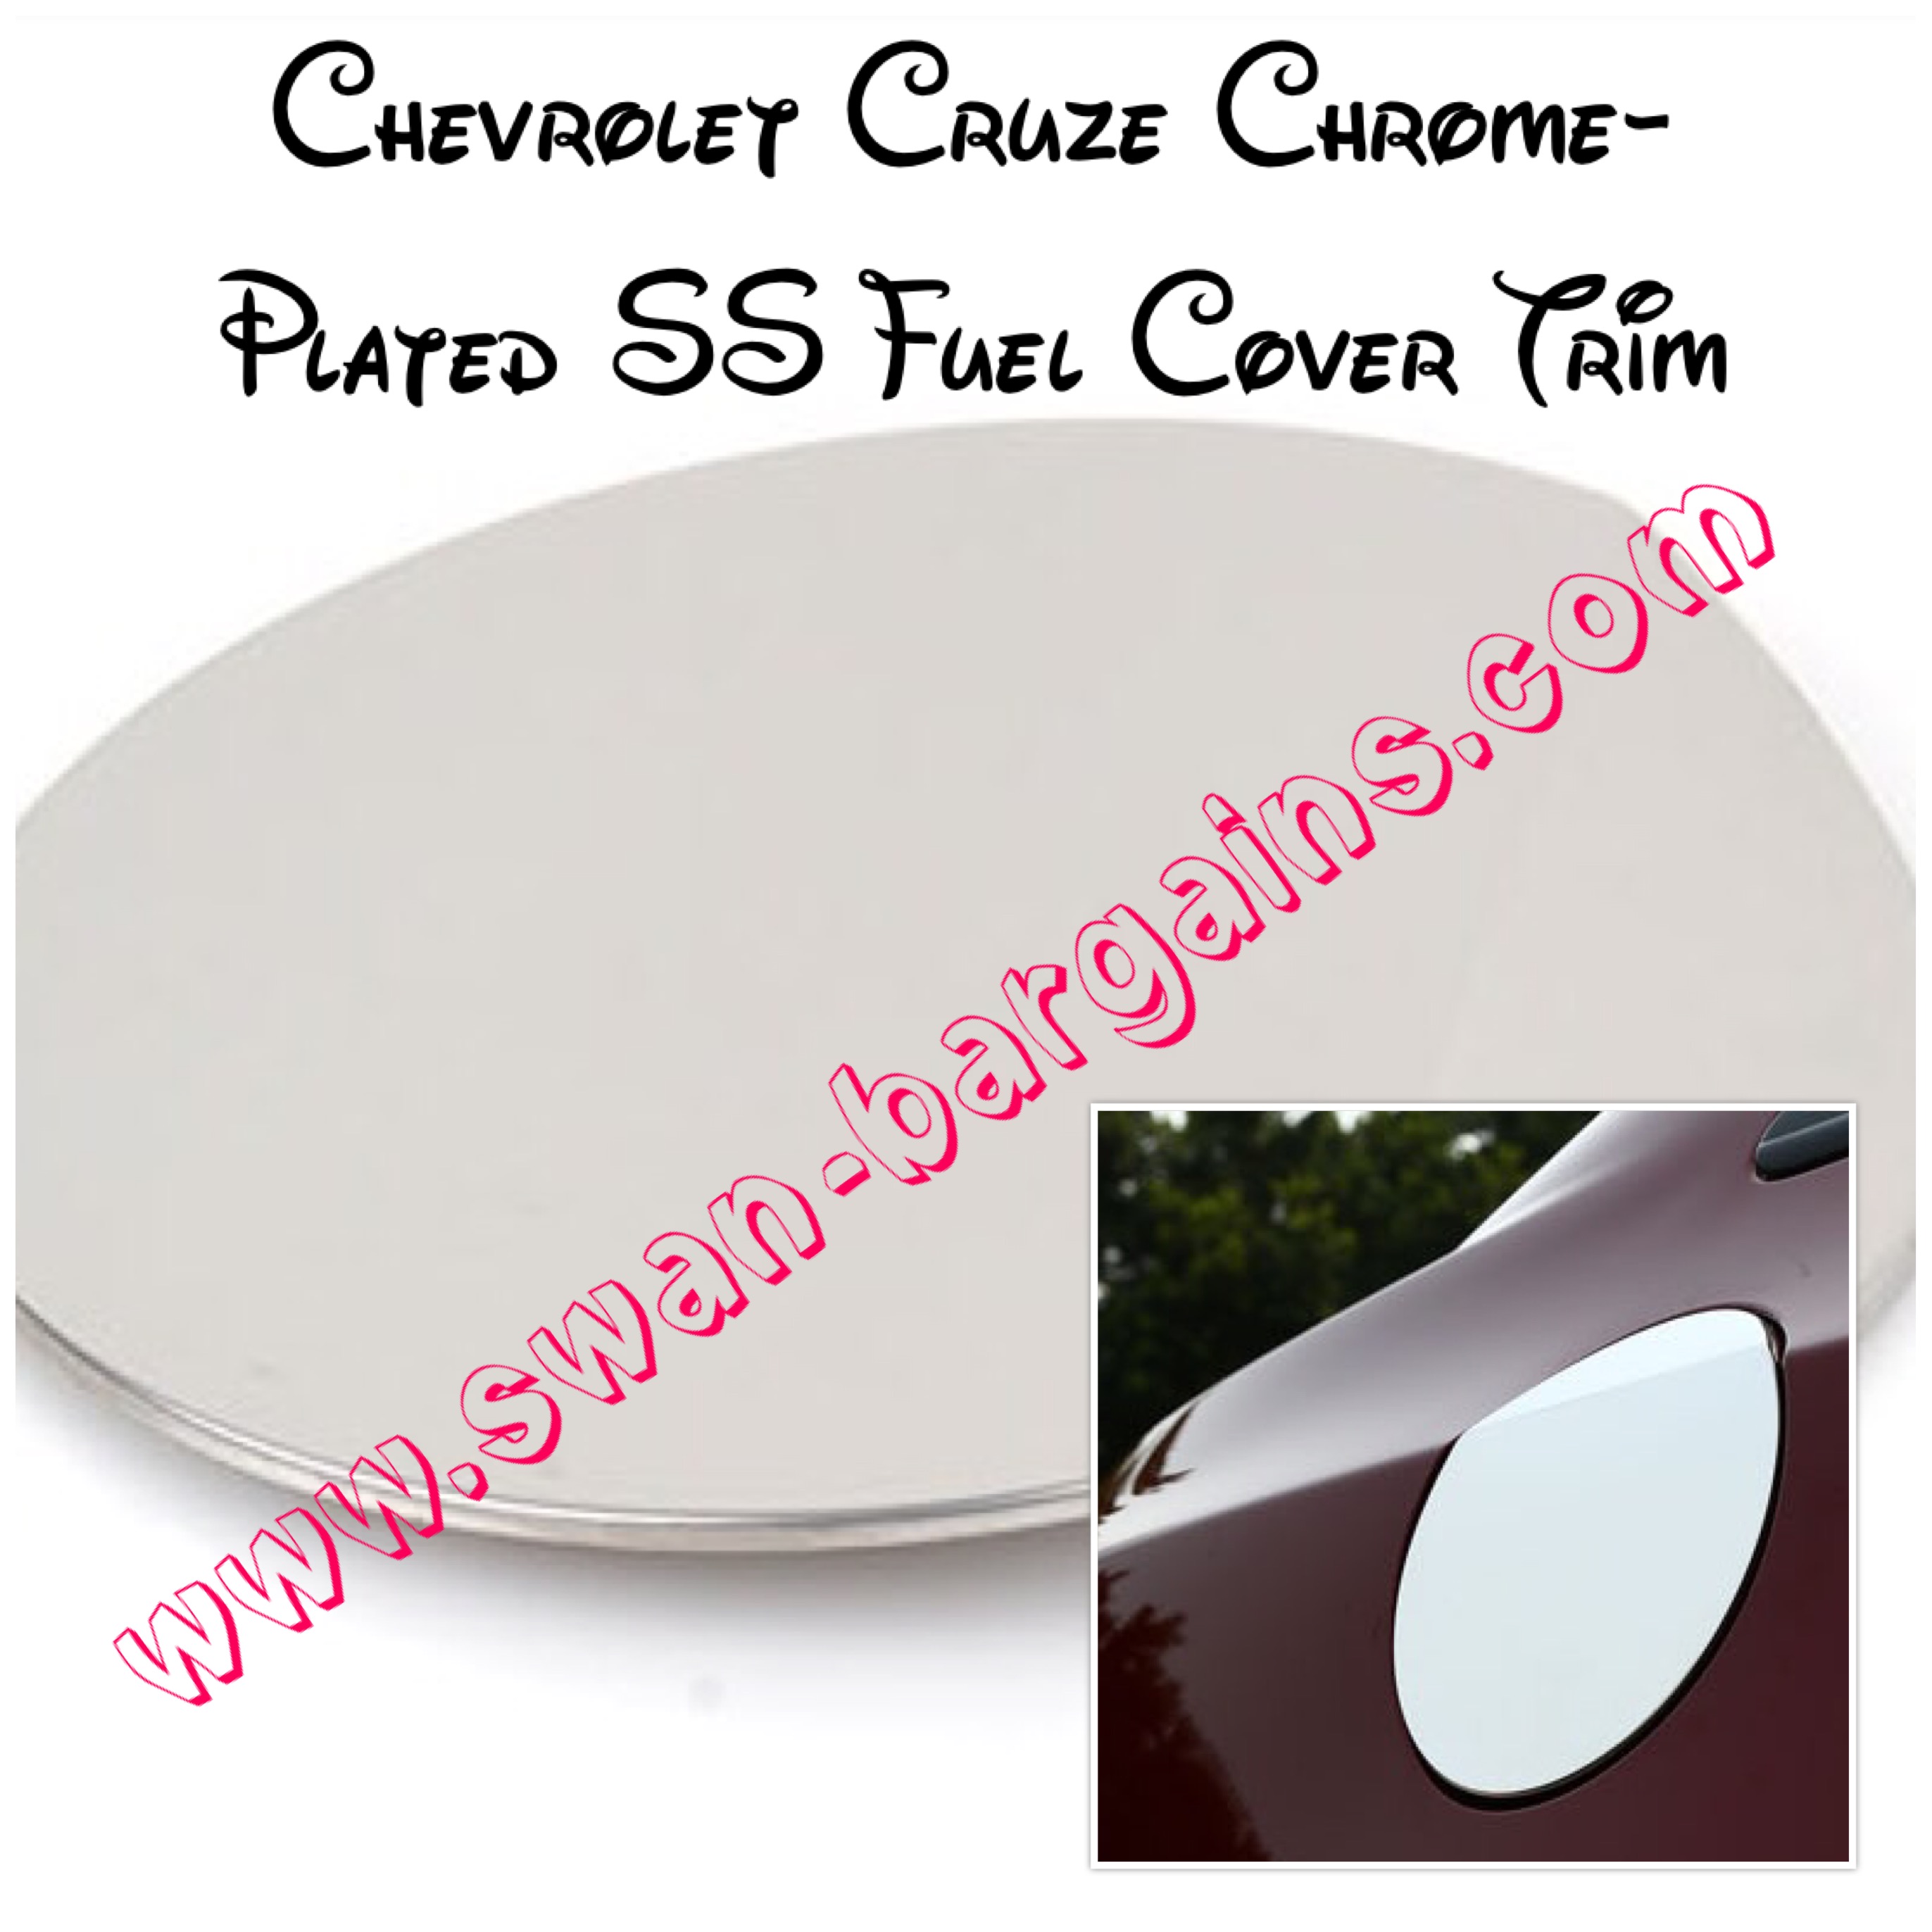 Chrome-plated Chevrolet Cruze Fuel Cover Trim Singapore